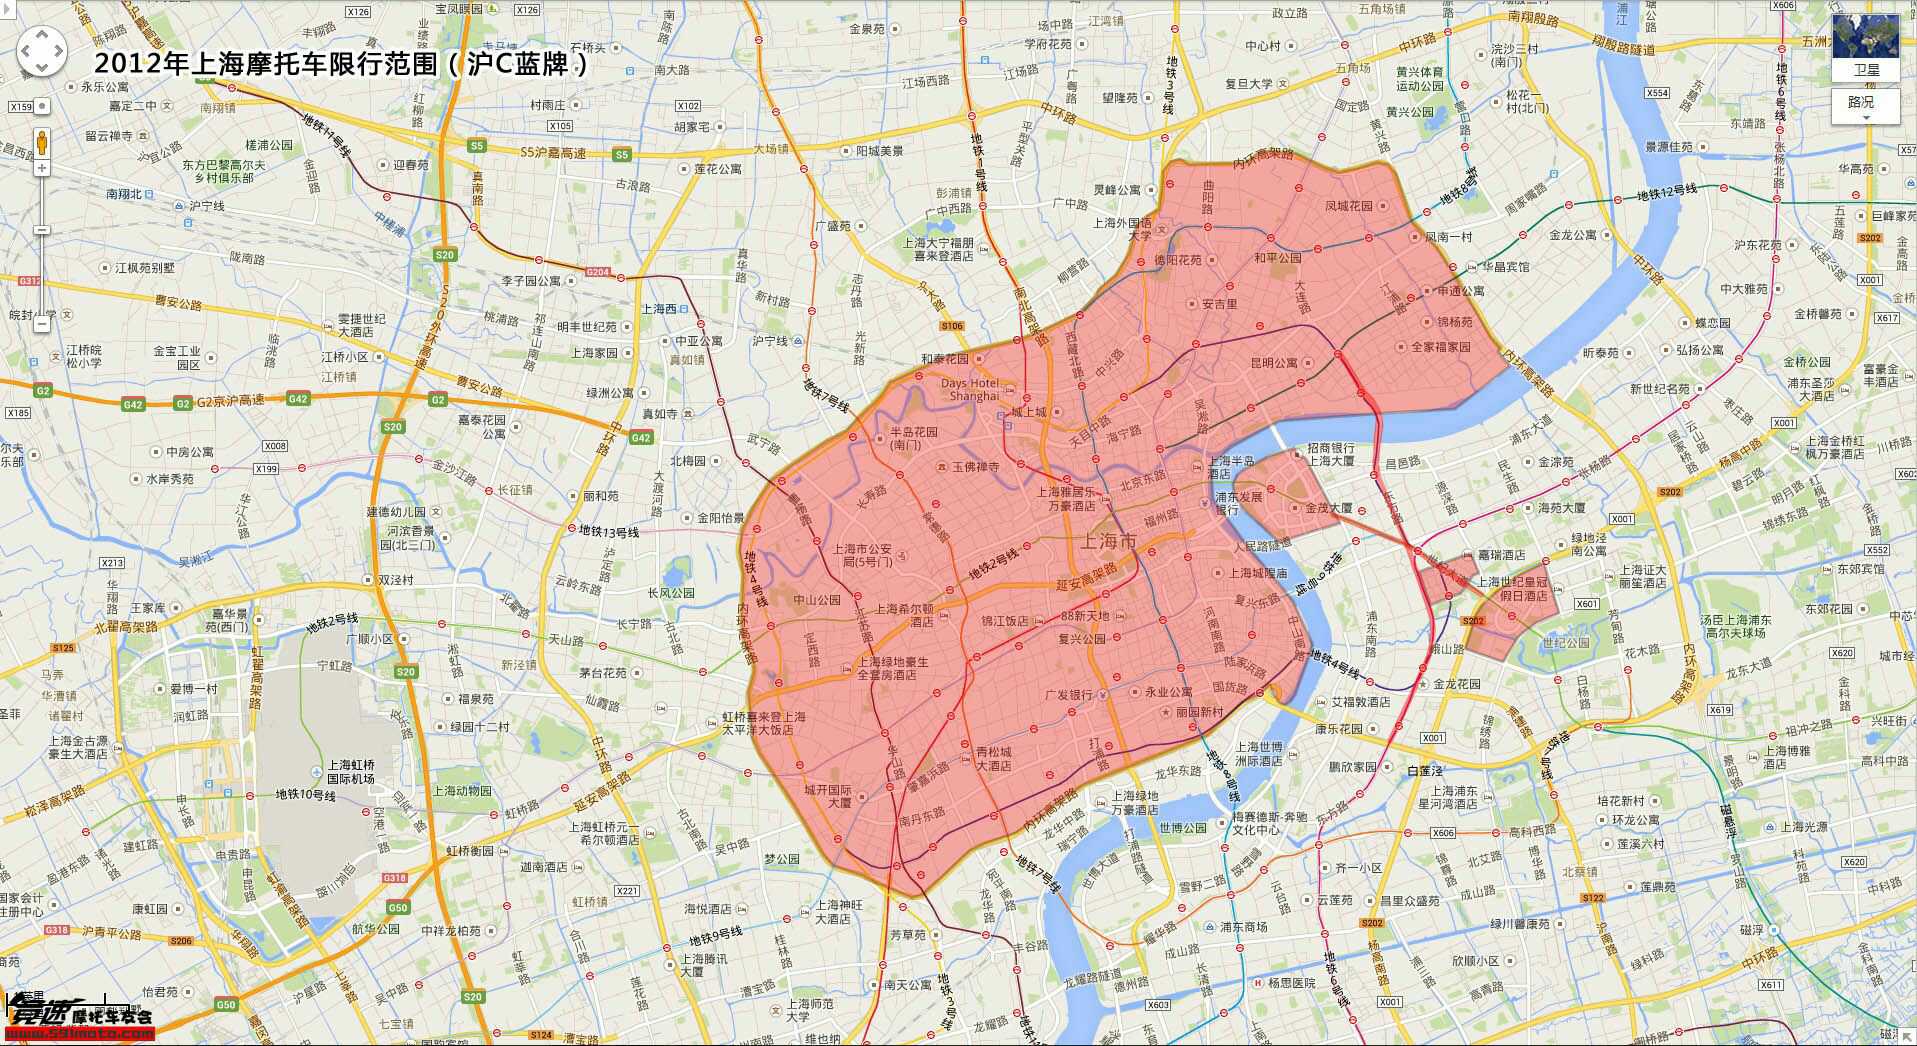 上海外牌禁摩区域地图图片